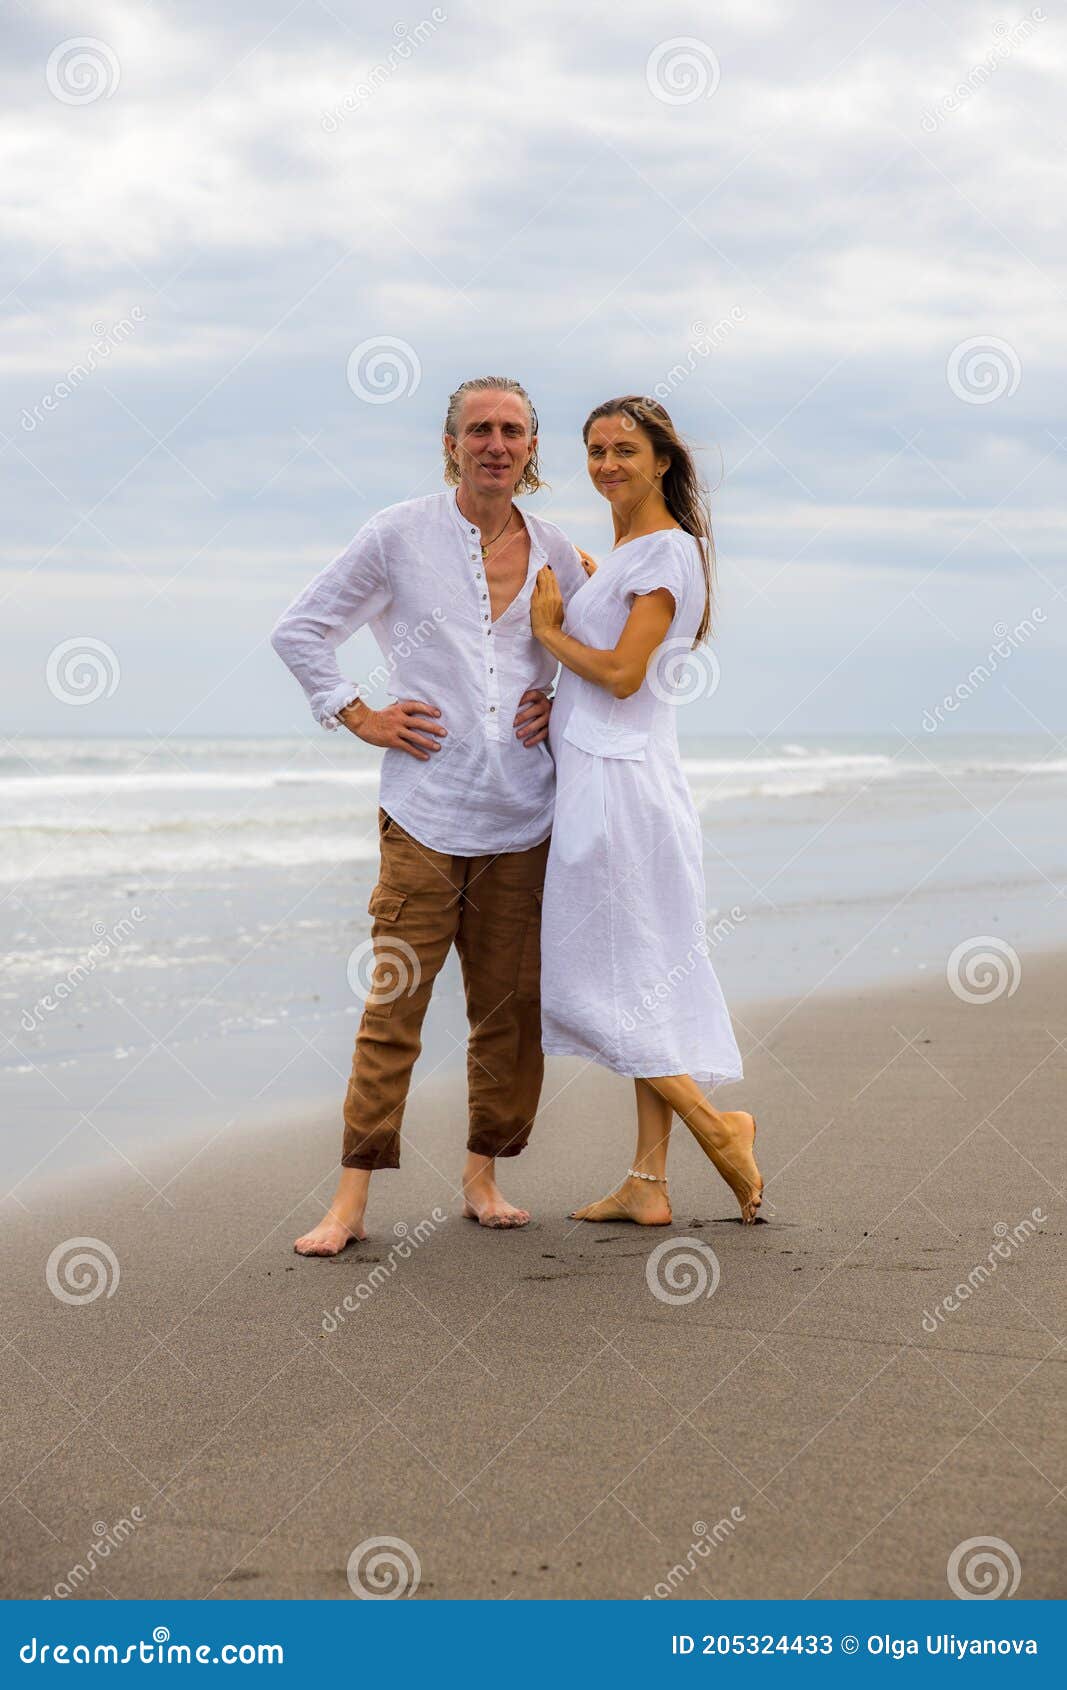 Pareja Caminando Descalzo Por La Hombre Con Pantalones Marrones Y Camisa Blanca. Mujer Vestida De Blanco. Marido Y Muje Imagen de archivo - Imagen de tarde, 205324433